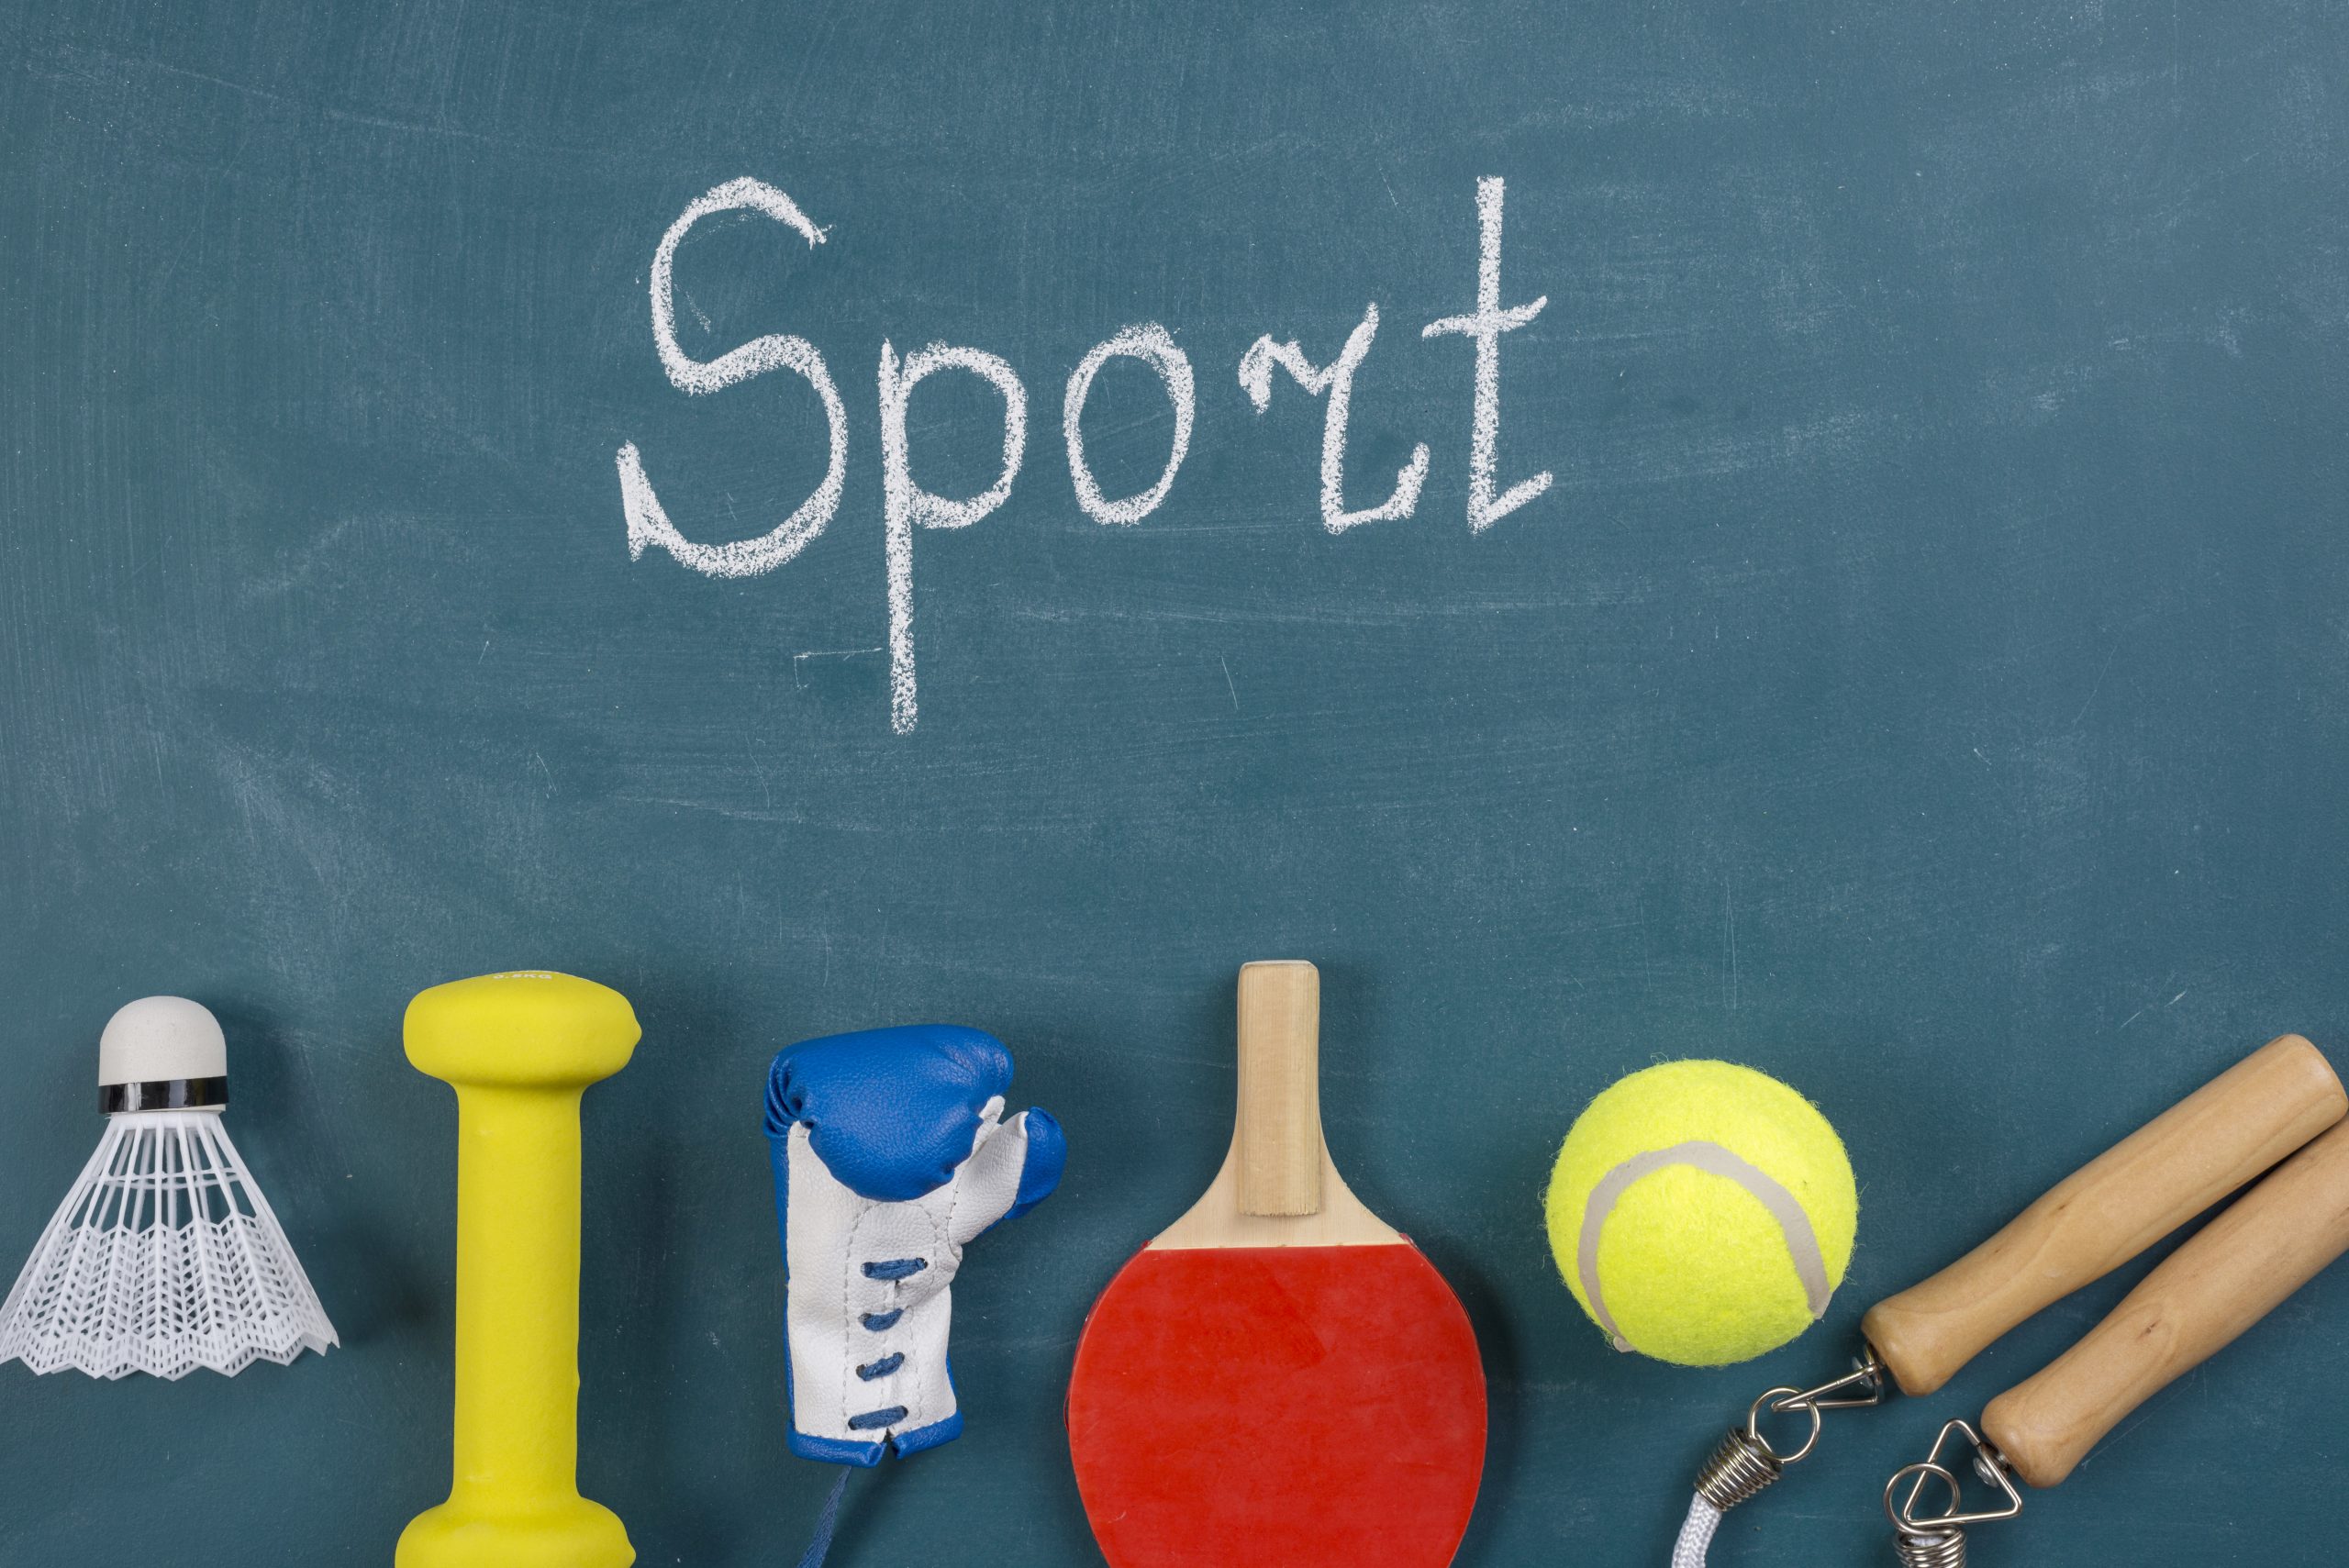 Lo sport entra in costituzione – articolo 33